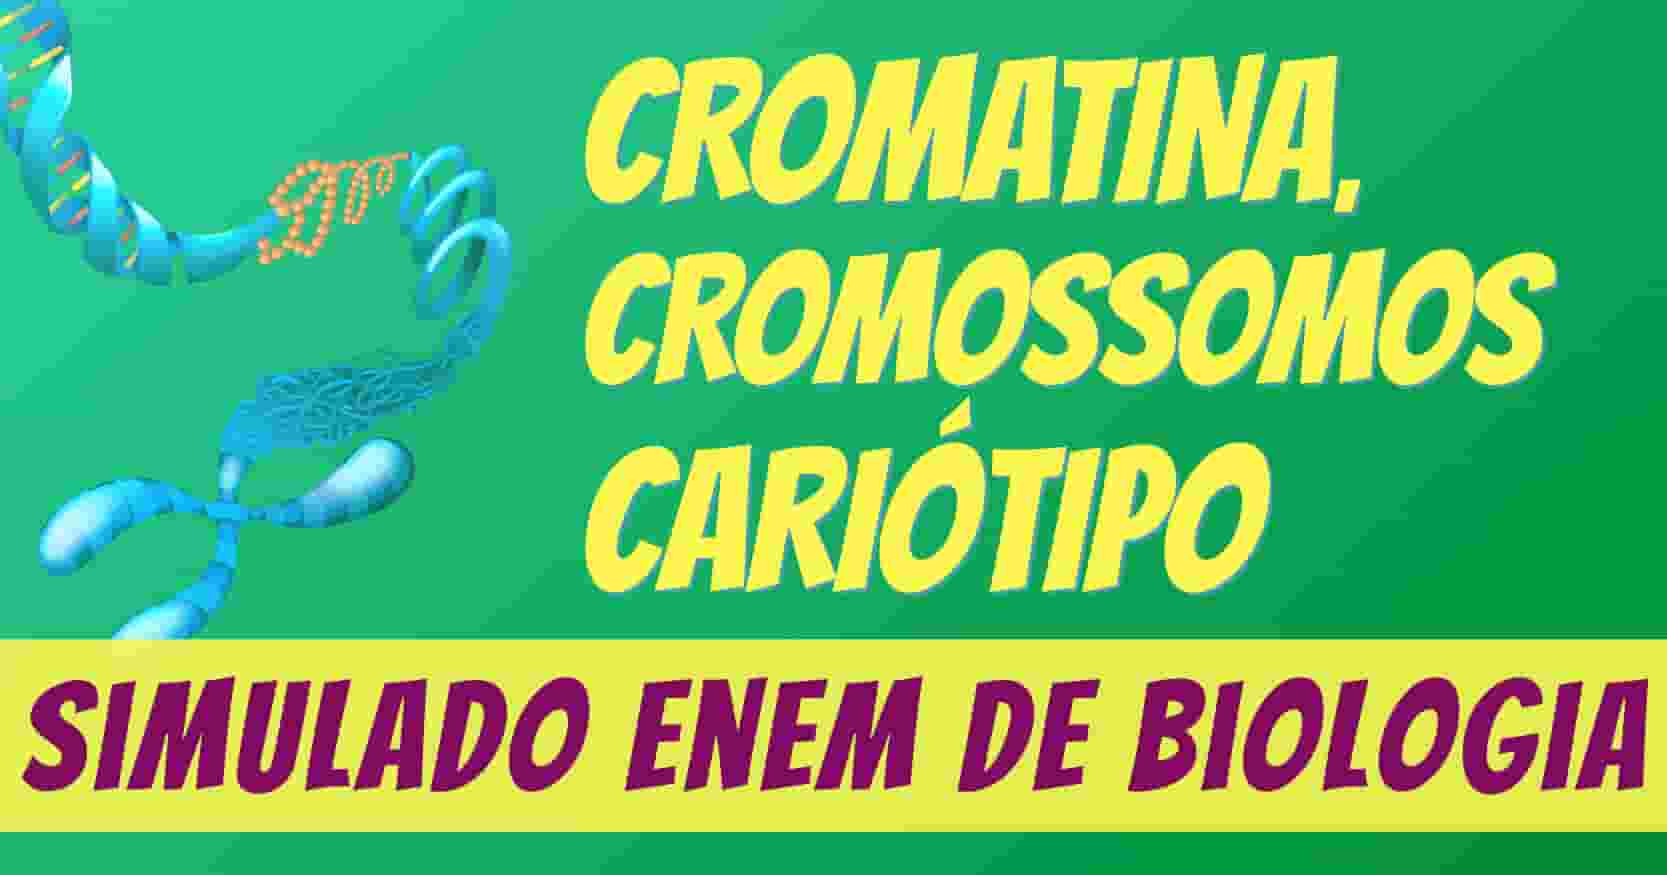 simulado de cromatina, cromossomos e cariótipo